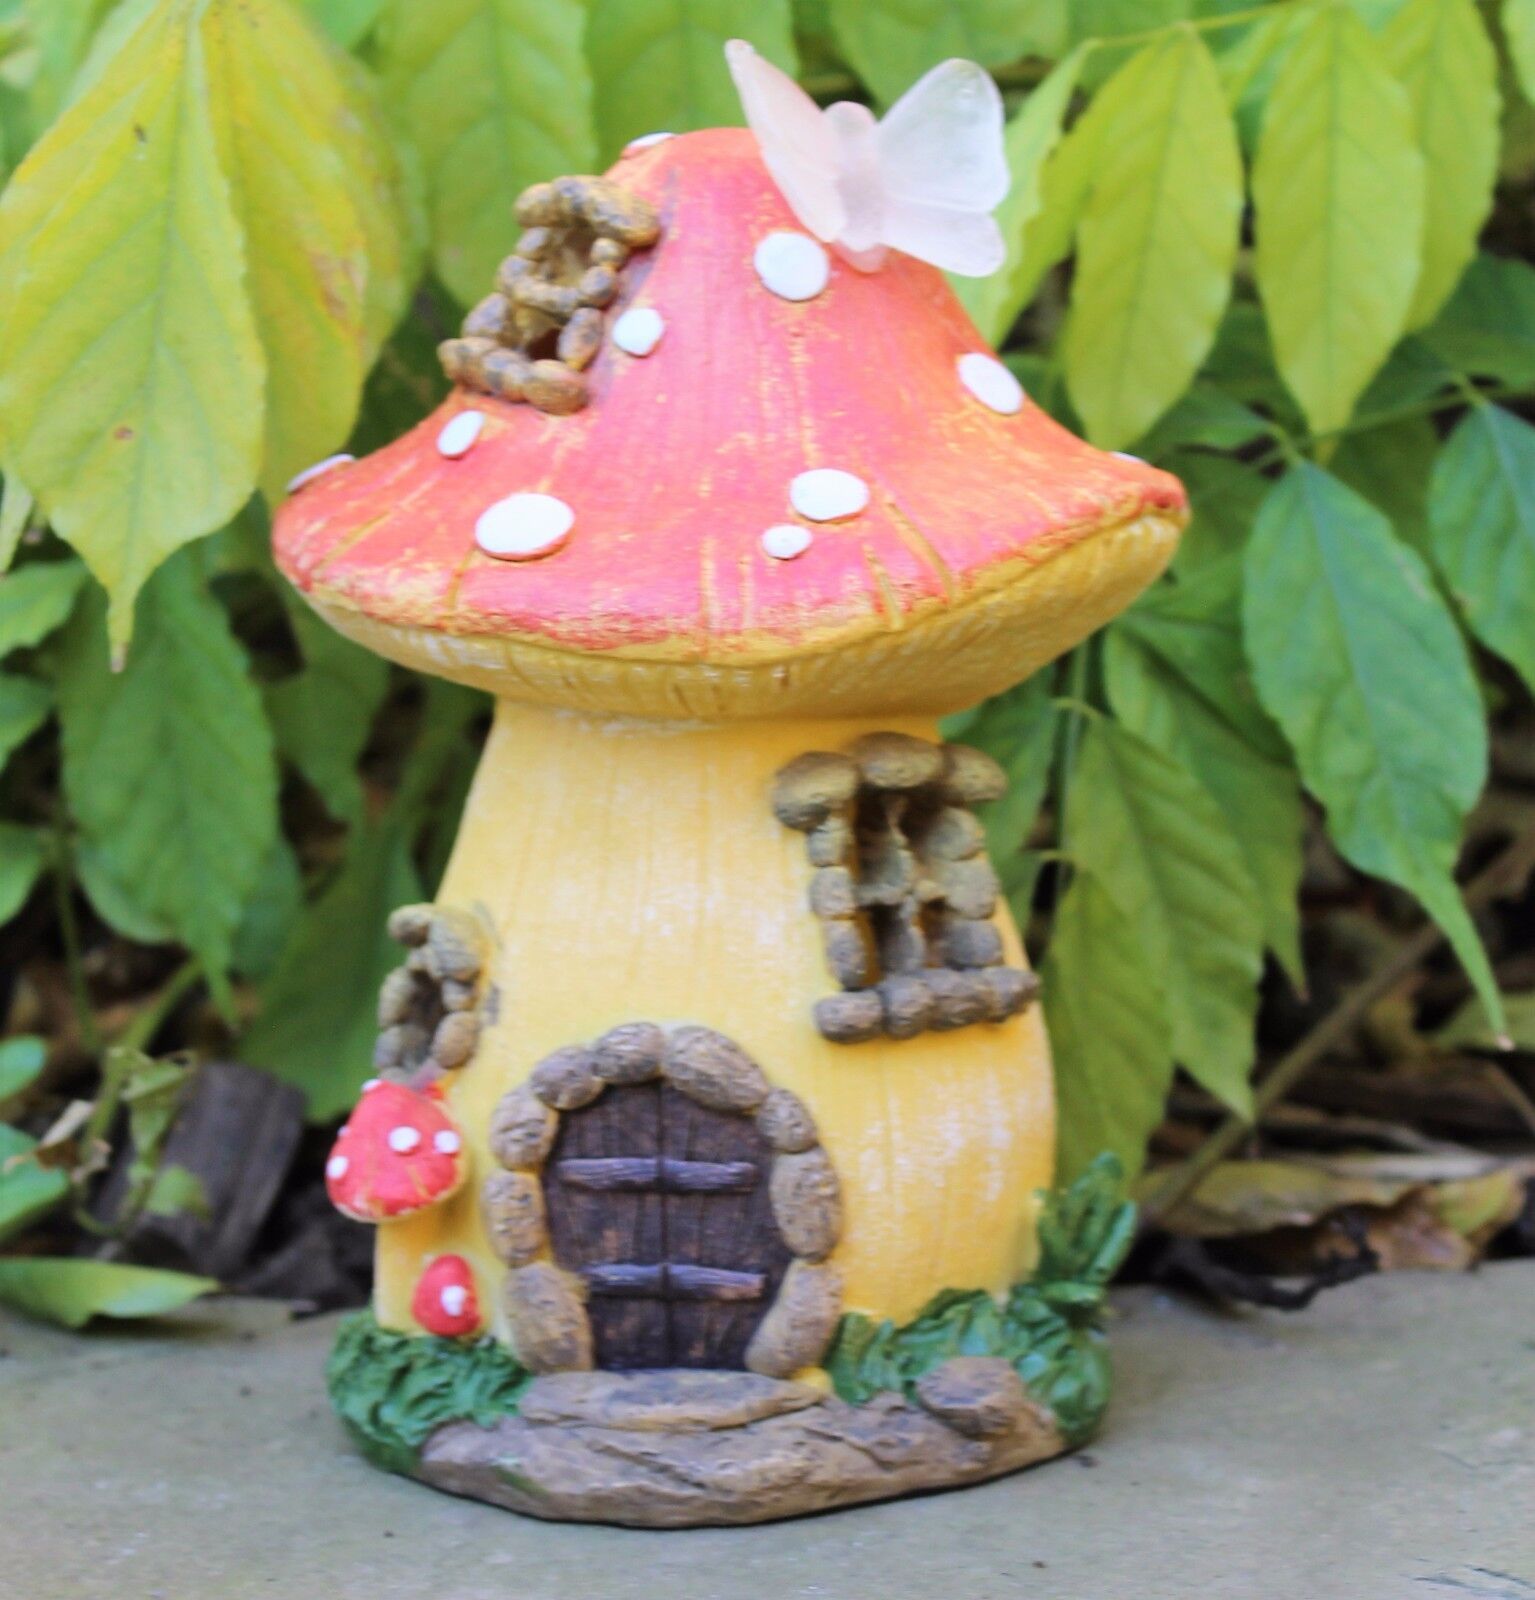 Garden Fairy Mushroom Flower House Solar Decorative Ornament Secret Gift